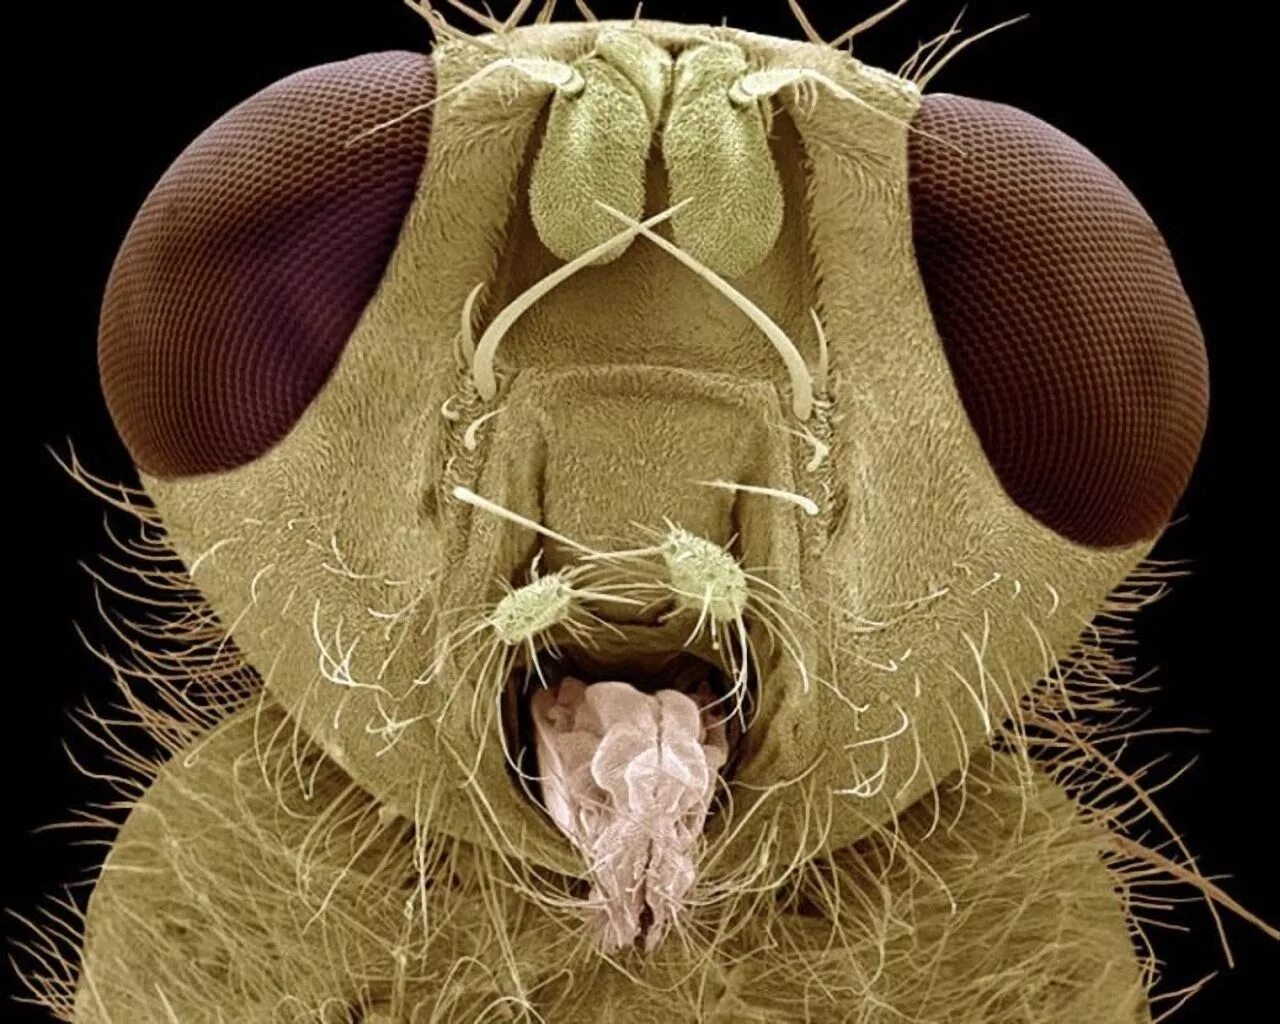 Мошка под микроскопом фото. Мошка гнус под микроскопом. Северная мошка под микроскопом. Мокрец мошка под микроскопом. Микромир насекомые под микроскопом.